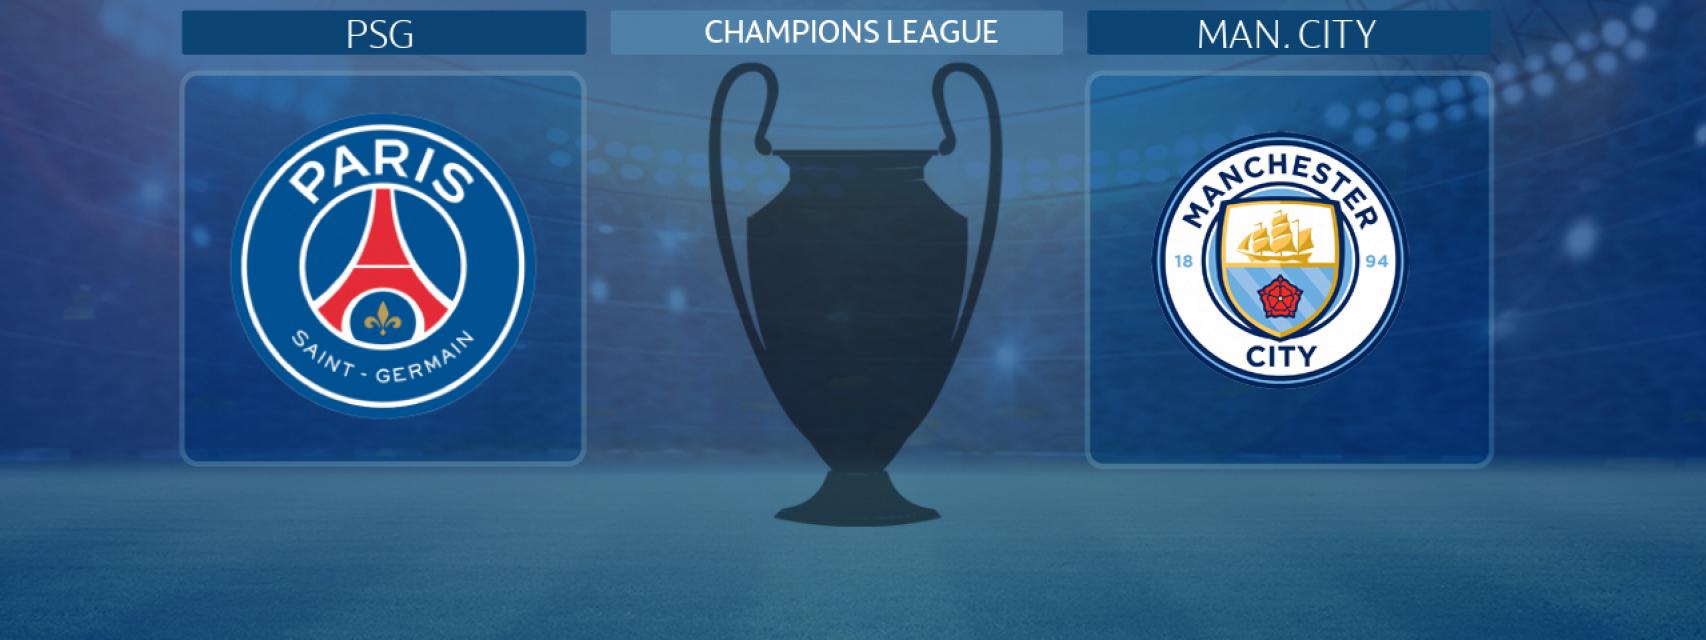 PSG - Manchester City, semifinal de la Champions League